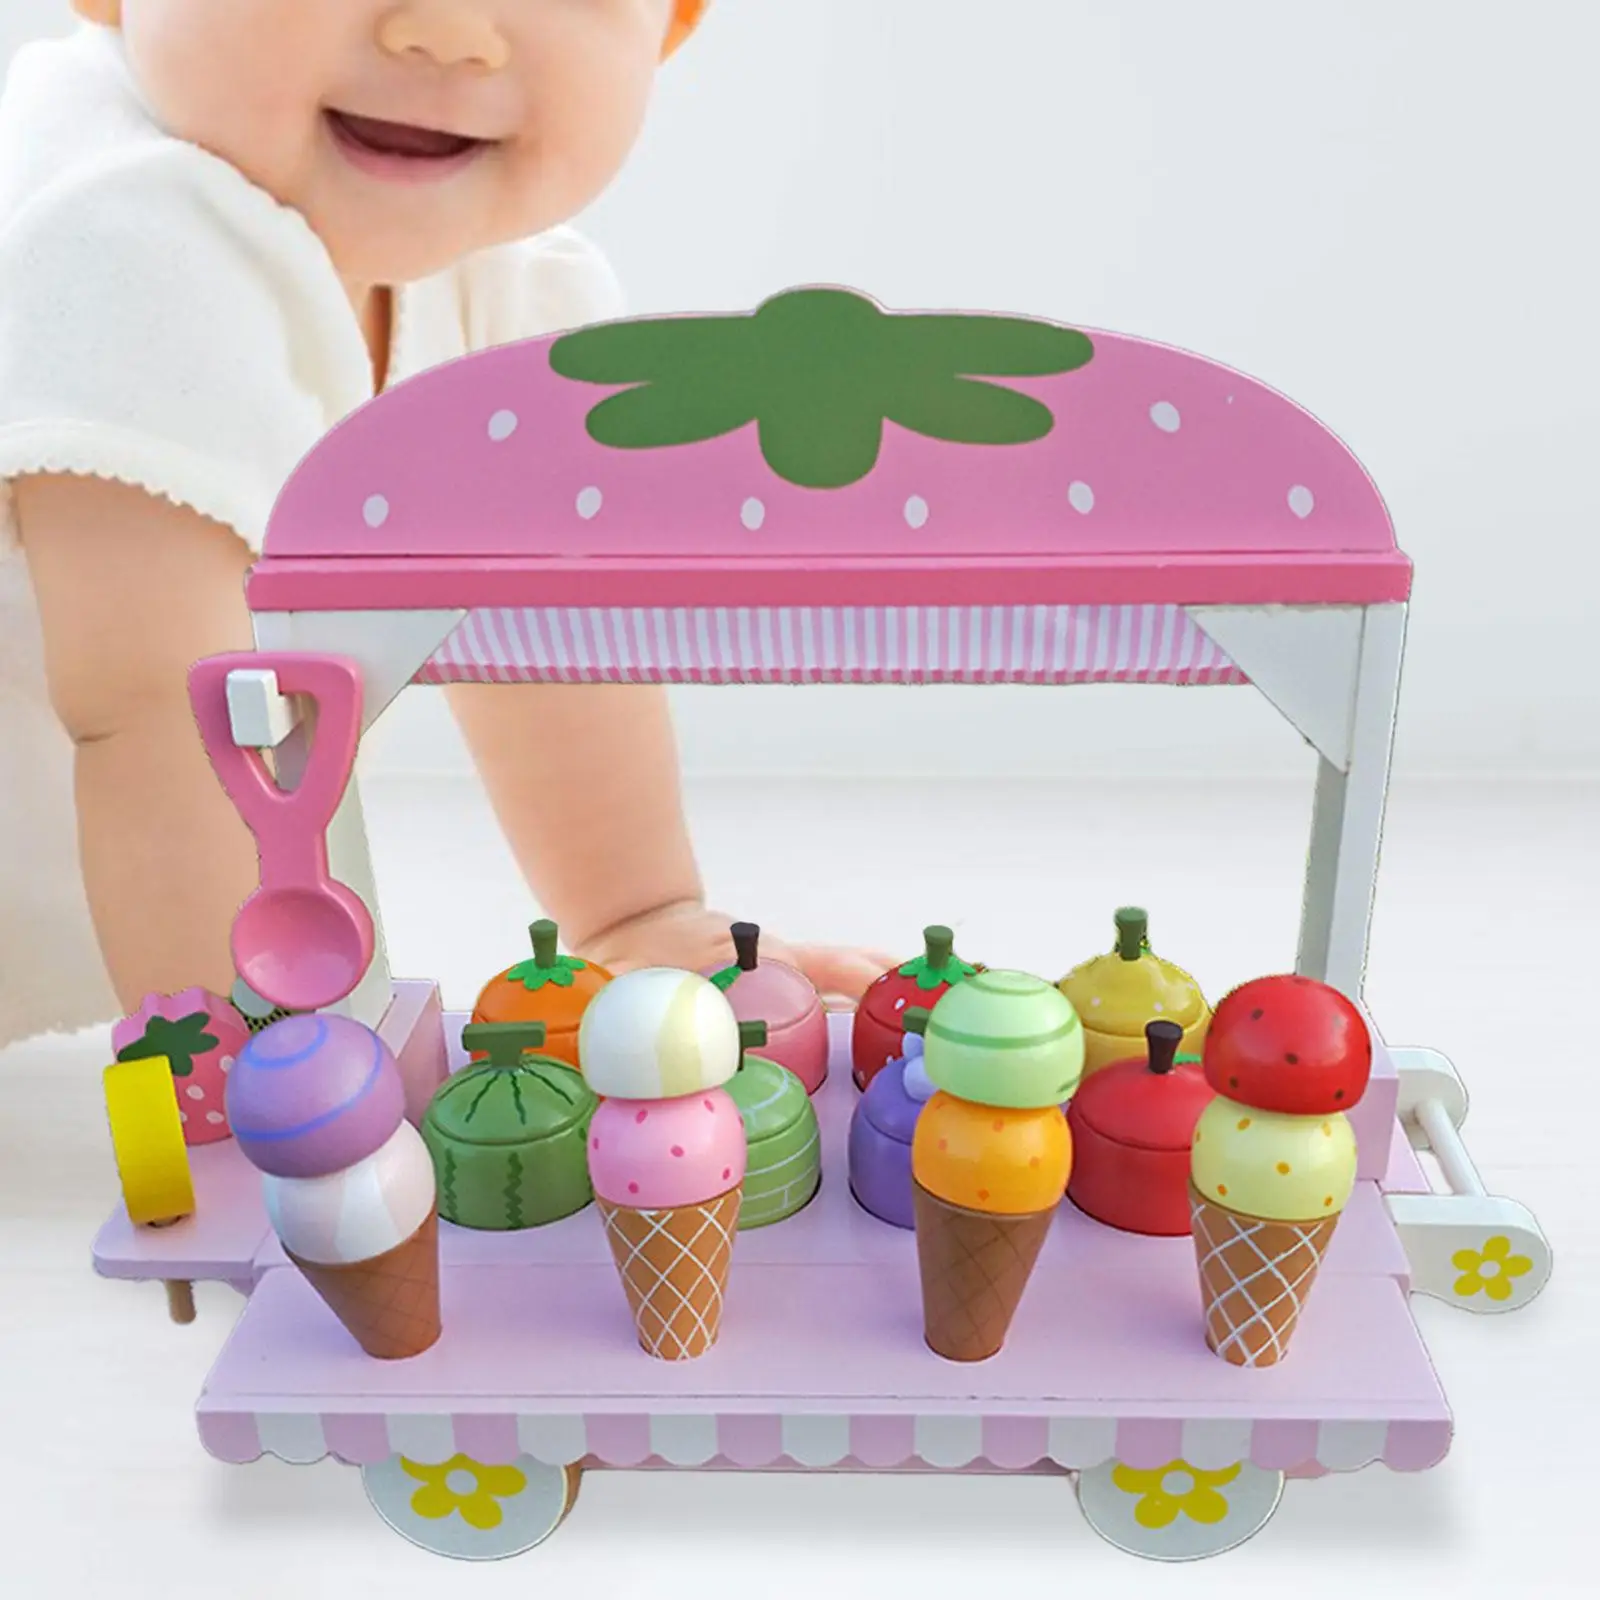 

Деревянная игрушка-тележка для мороженого, игрушечный счетчик для мороженого, имитация мороженого, ролевая игра для детей, подарки на день рождения